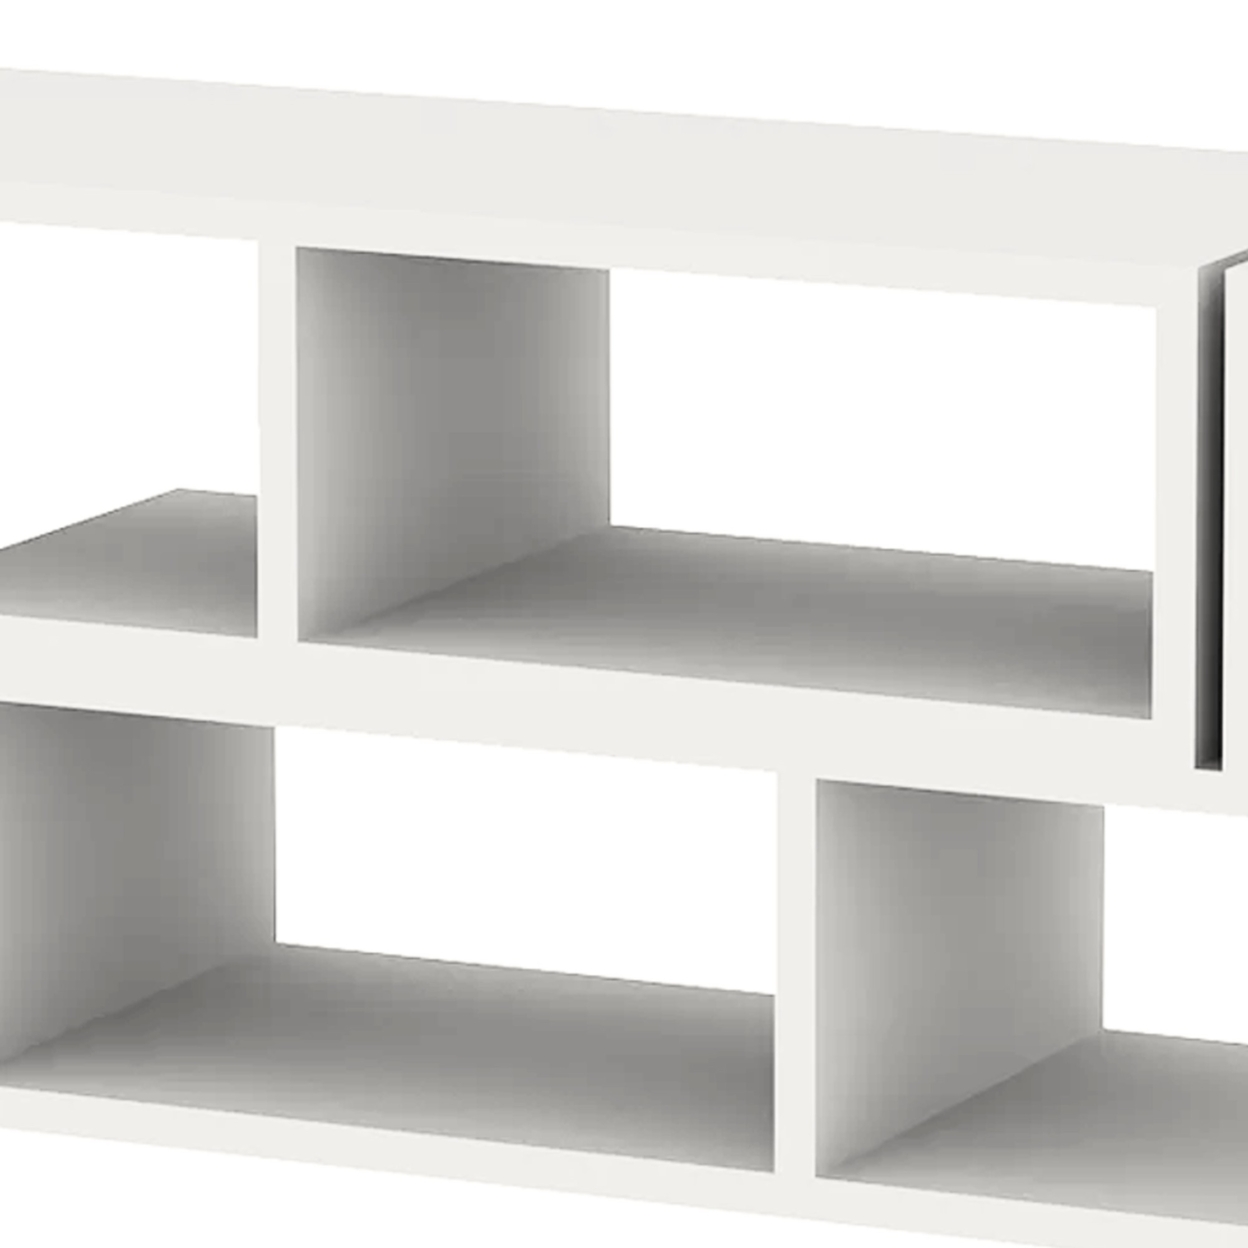 Hollow Core TV Console And Bookcase Combination, White- Saltoro Sherpi